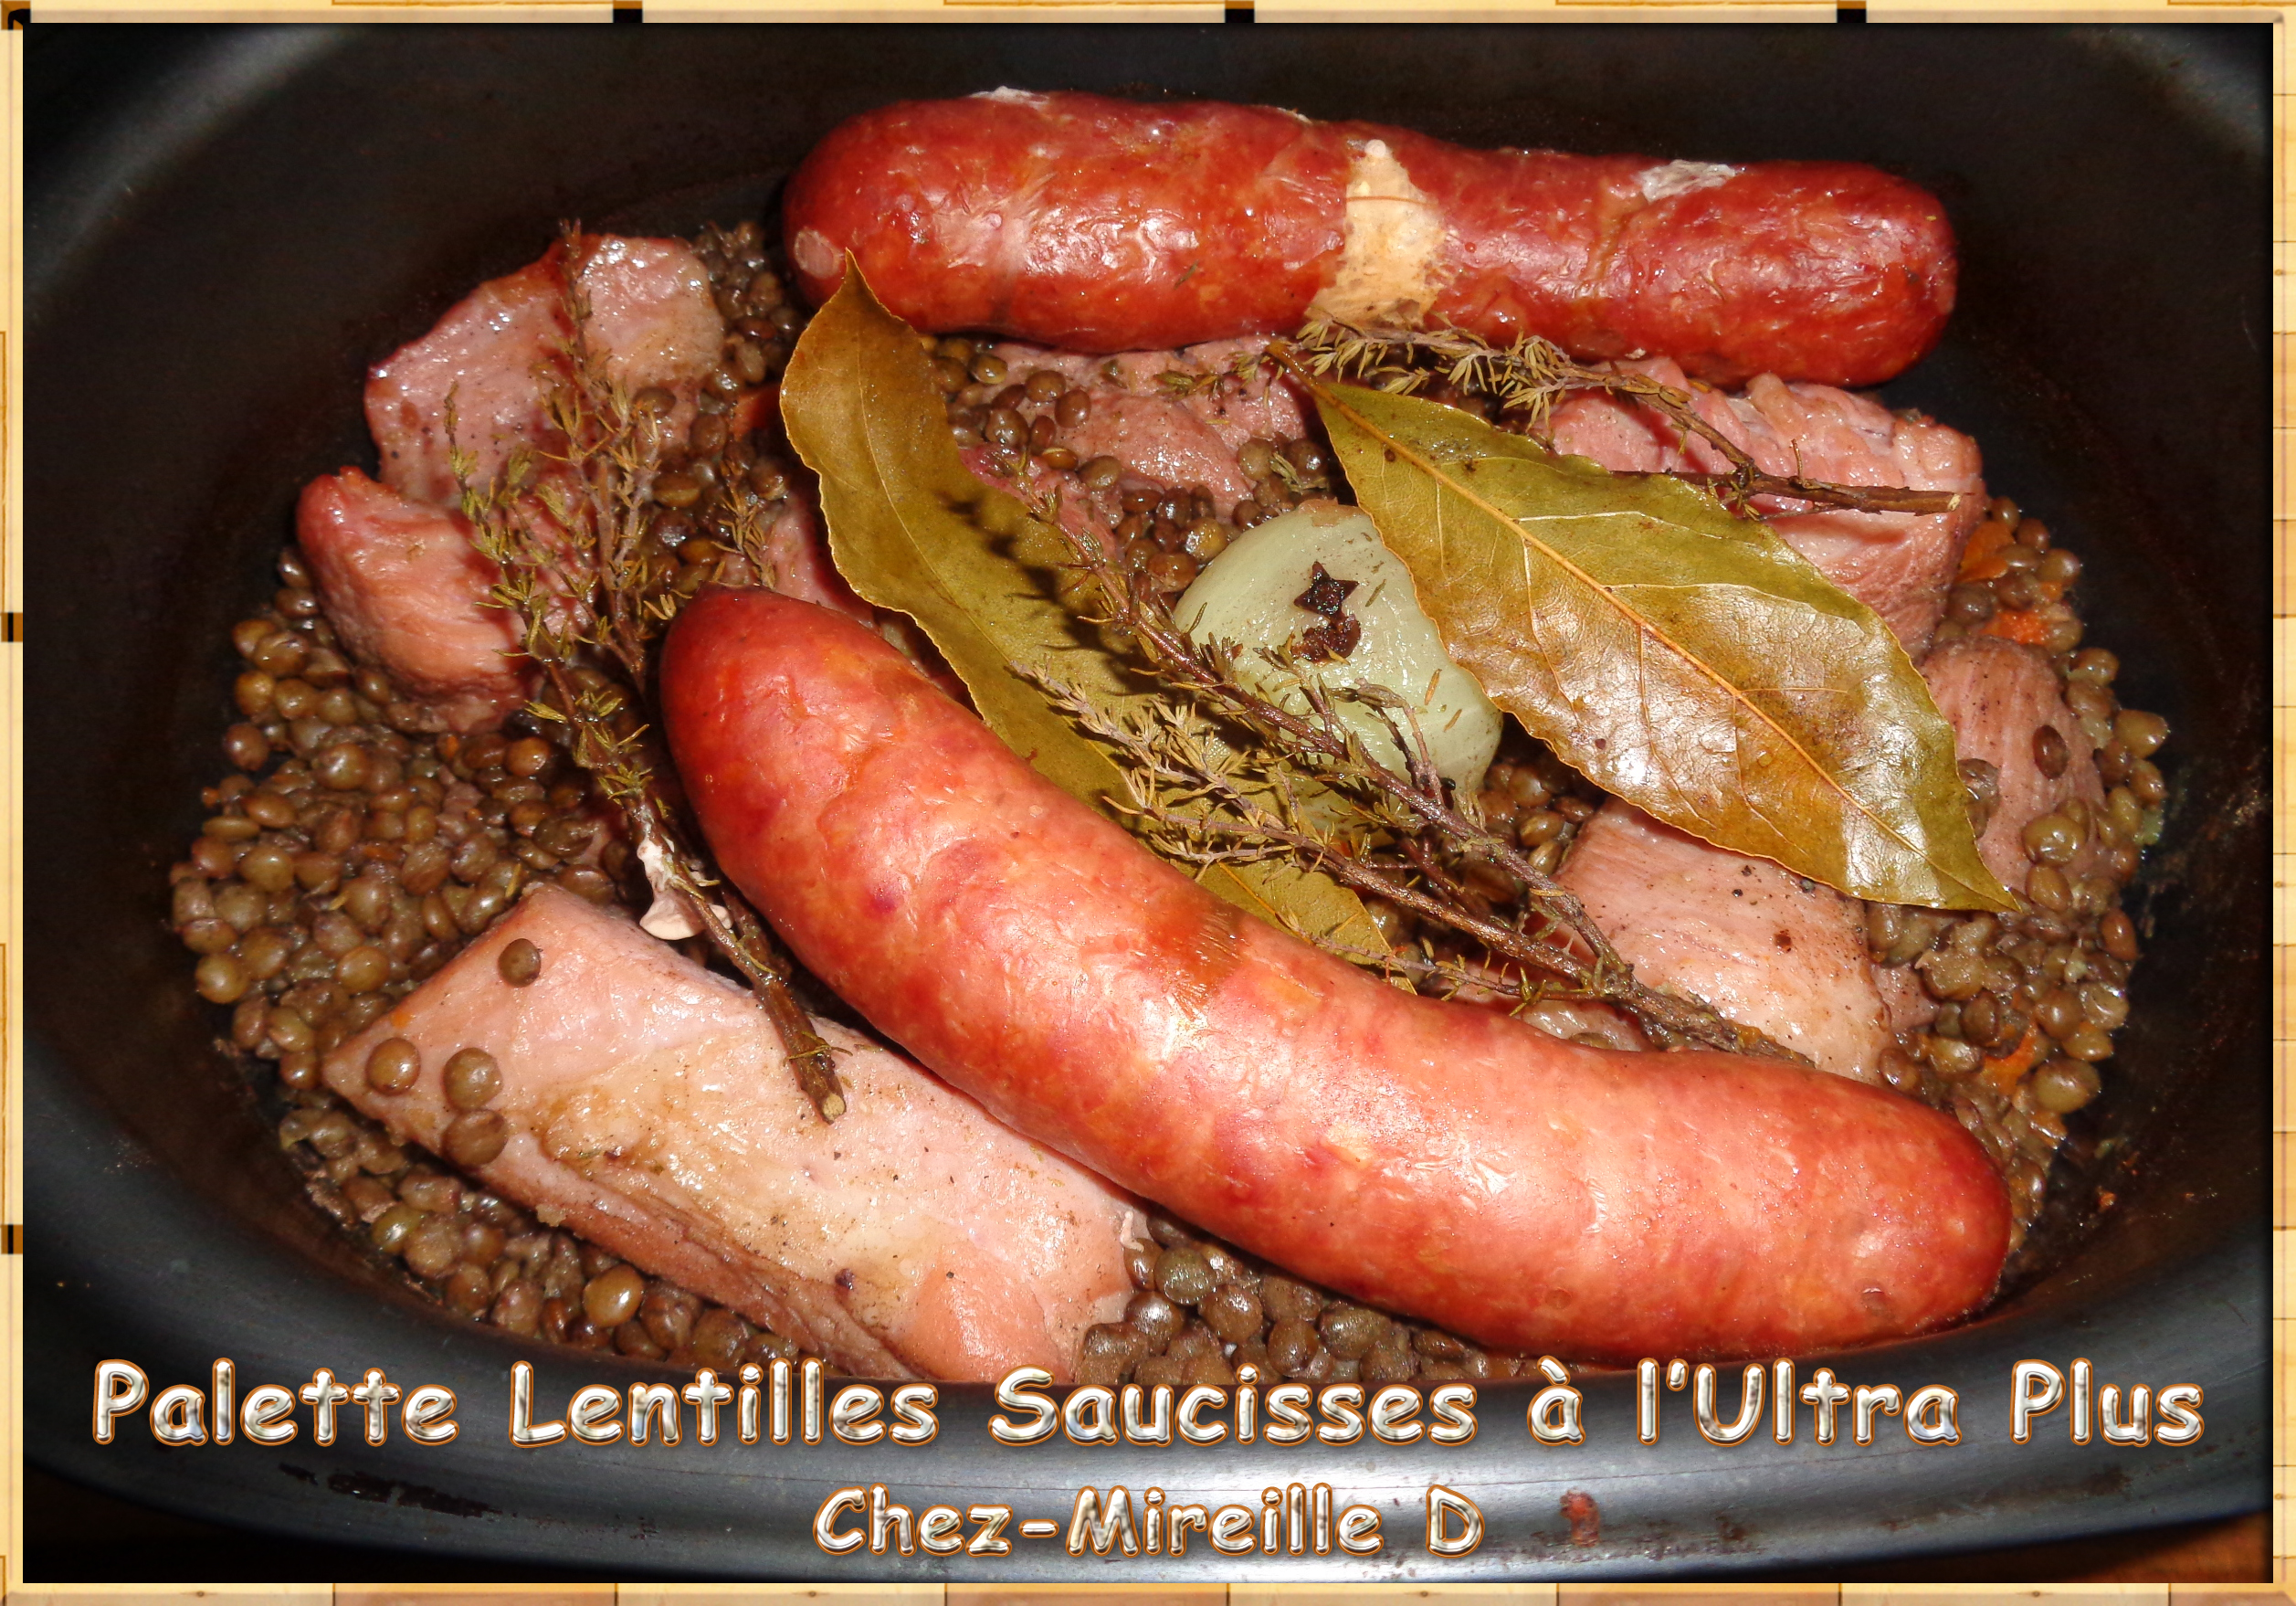 Palette Lentilles Saucisses à l'Ultra Plus - Chez-Mireille D